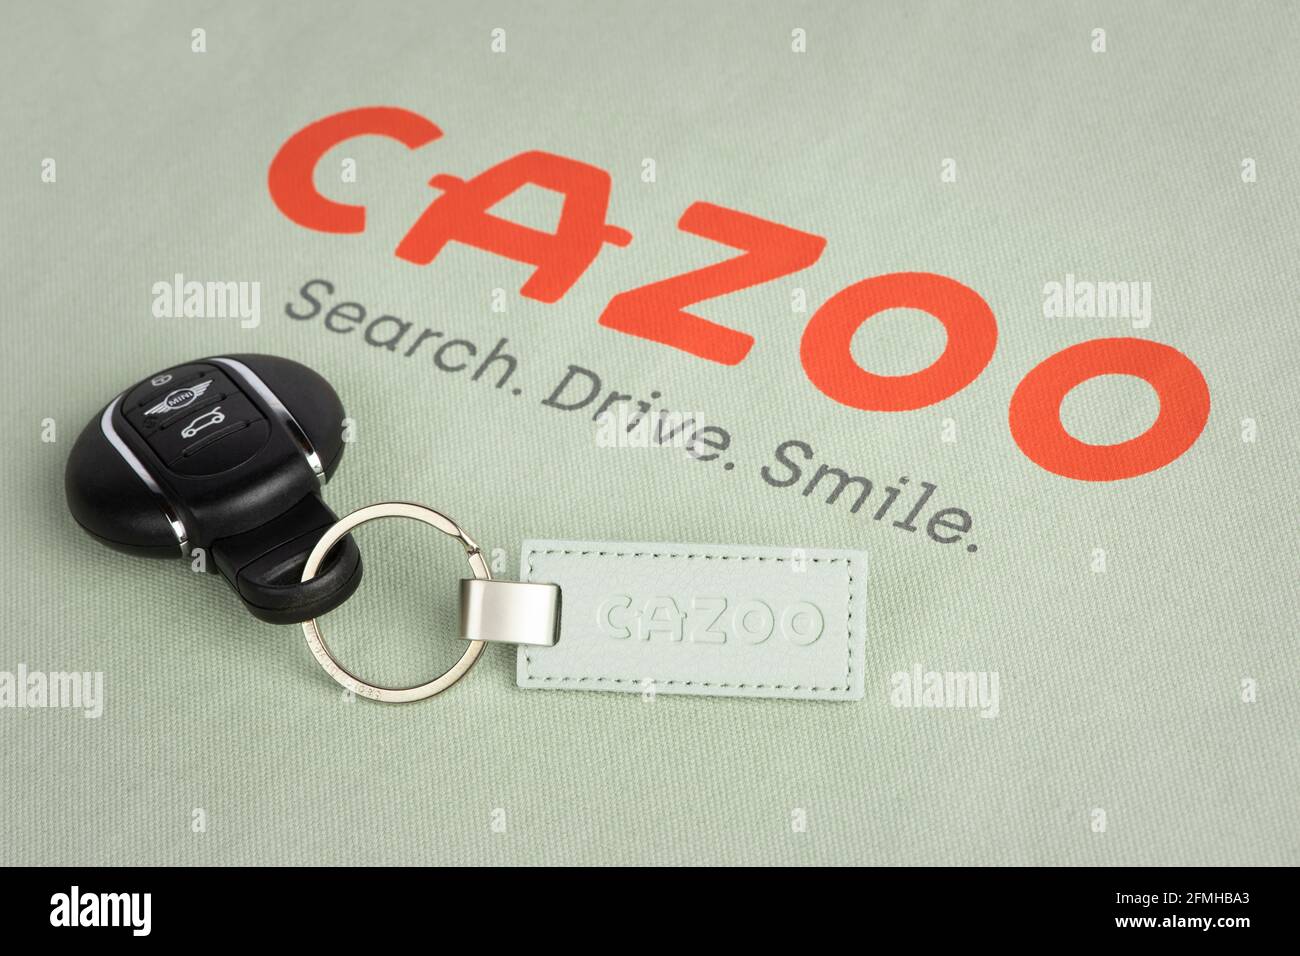 El logotipo de Cazoo, minorista de automoción en línea, como se ve en una de las bolsas de mano y llavero de la empresa. Foto de stock